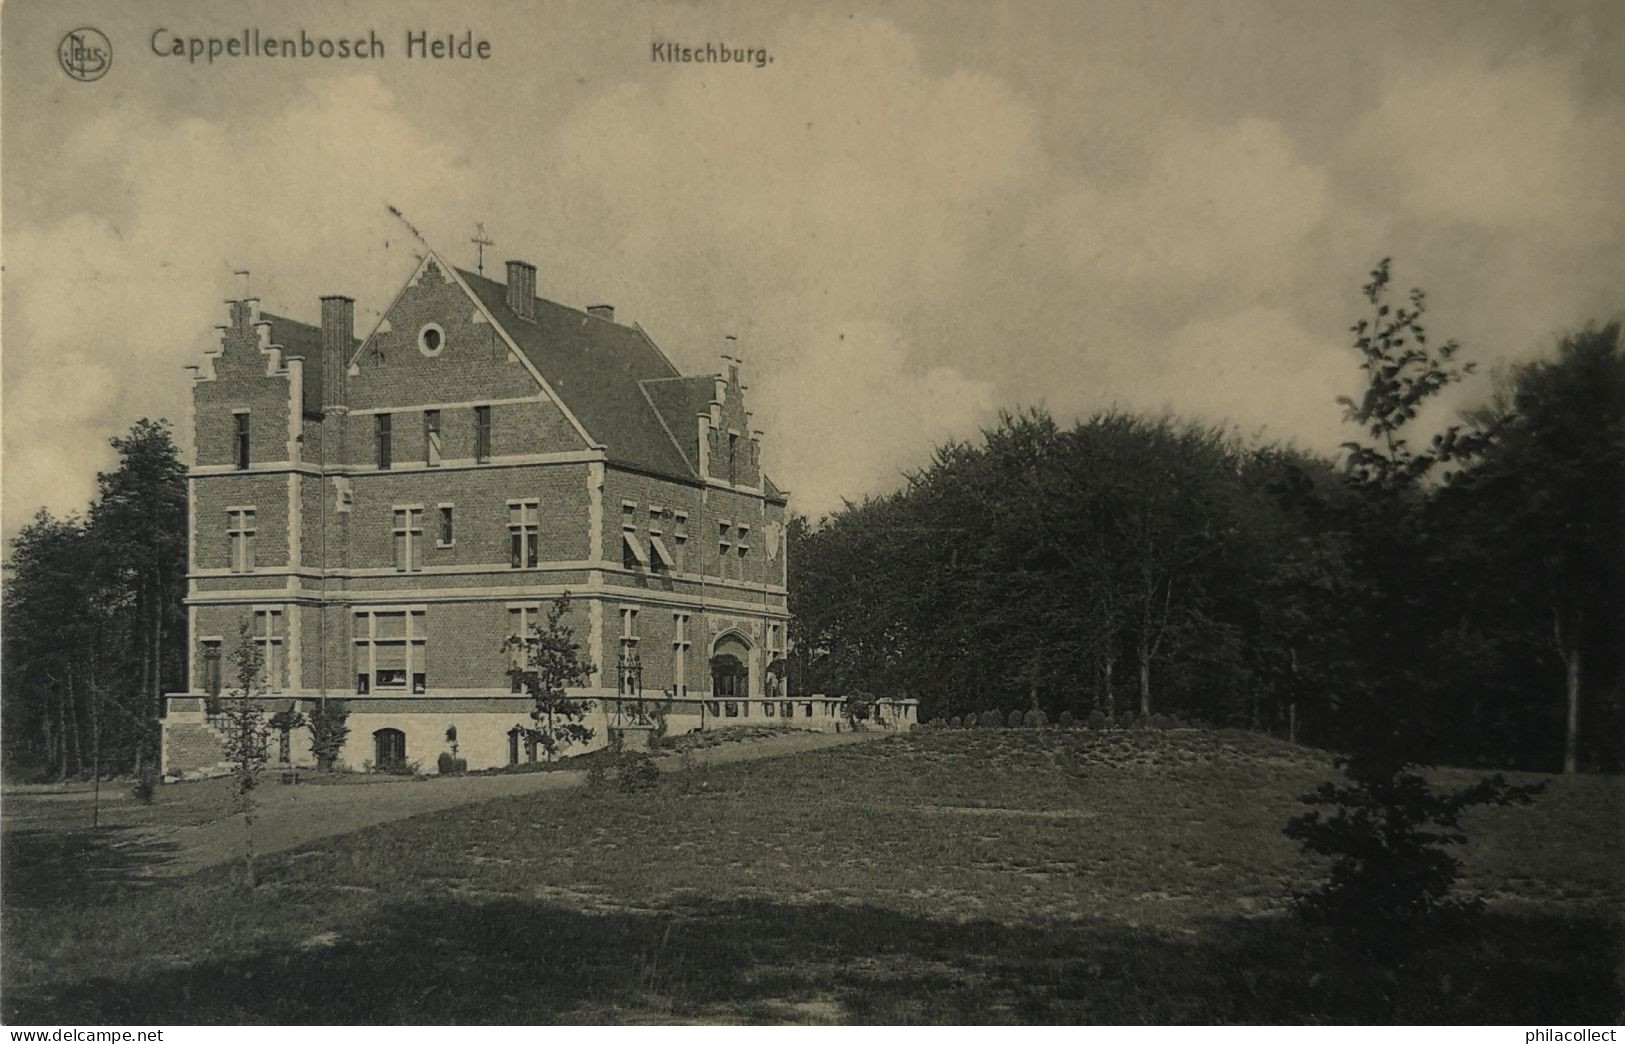 Kapellenbos - Heide (Cappellenbosch - Heide) Kitschburg 1913 - Kapellen